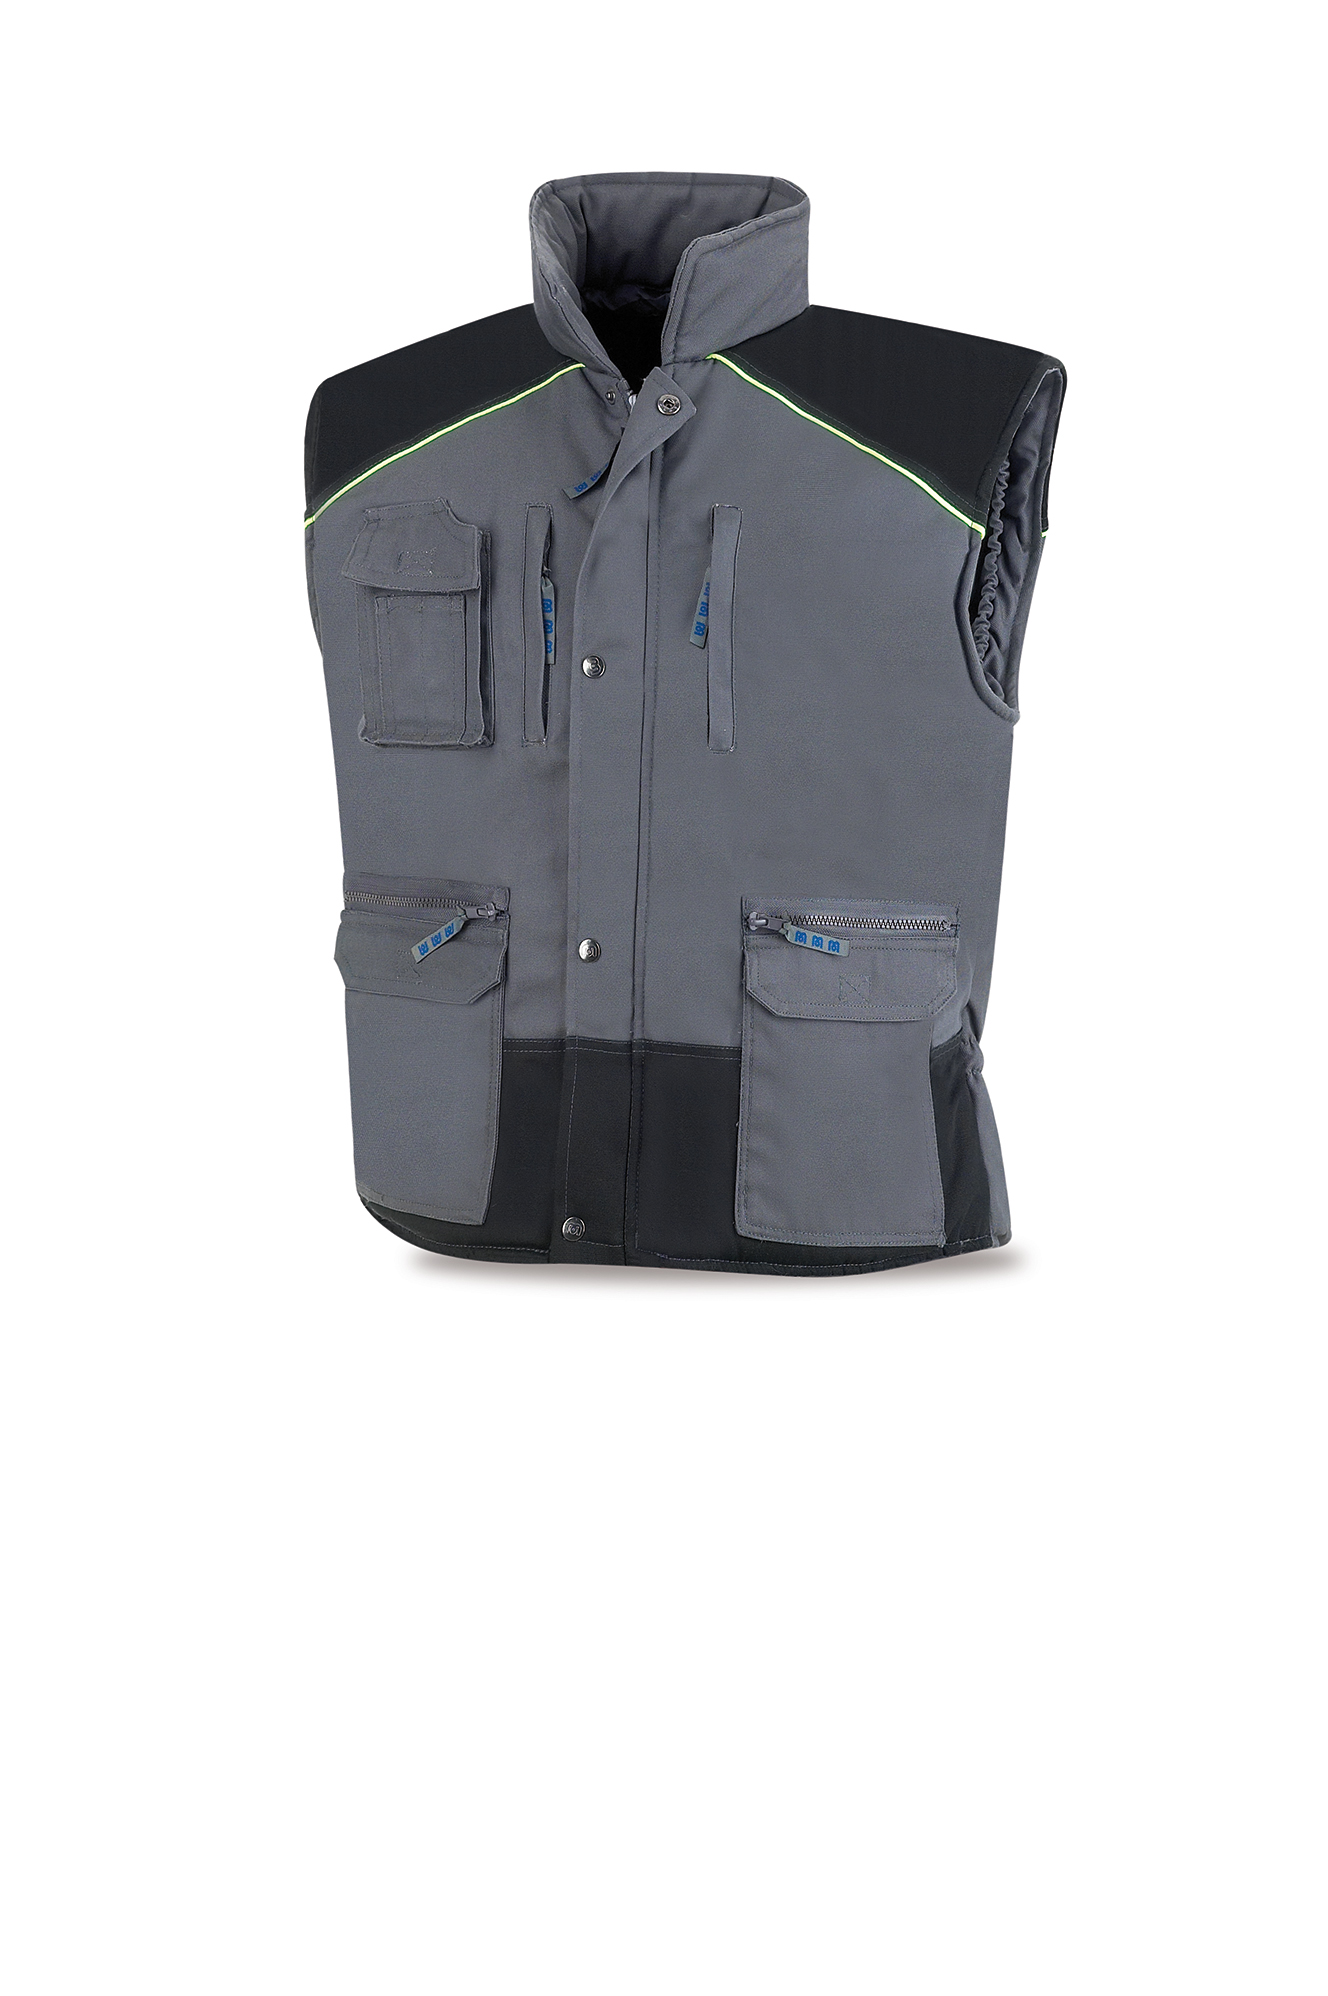 288-VGN Workwear Pro Series Vest. Dark grey/Black. 